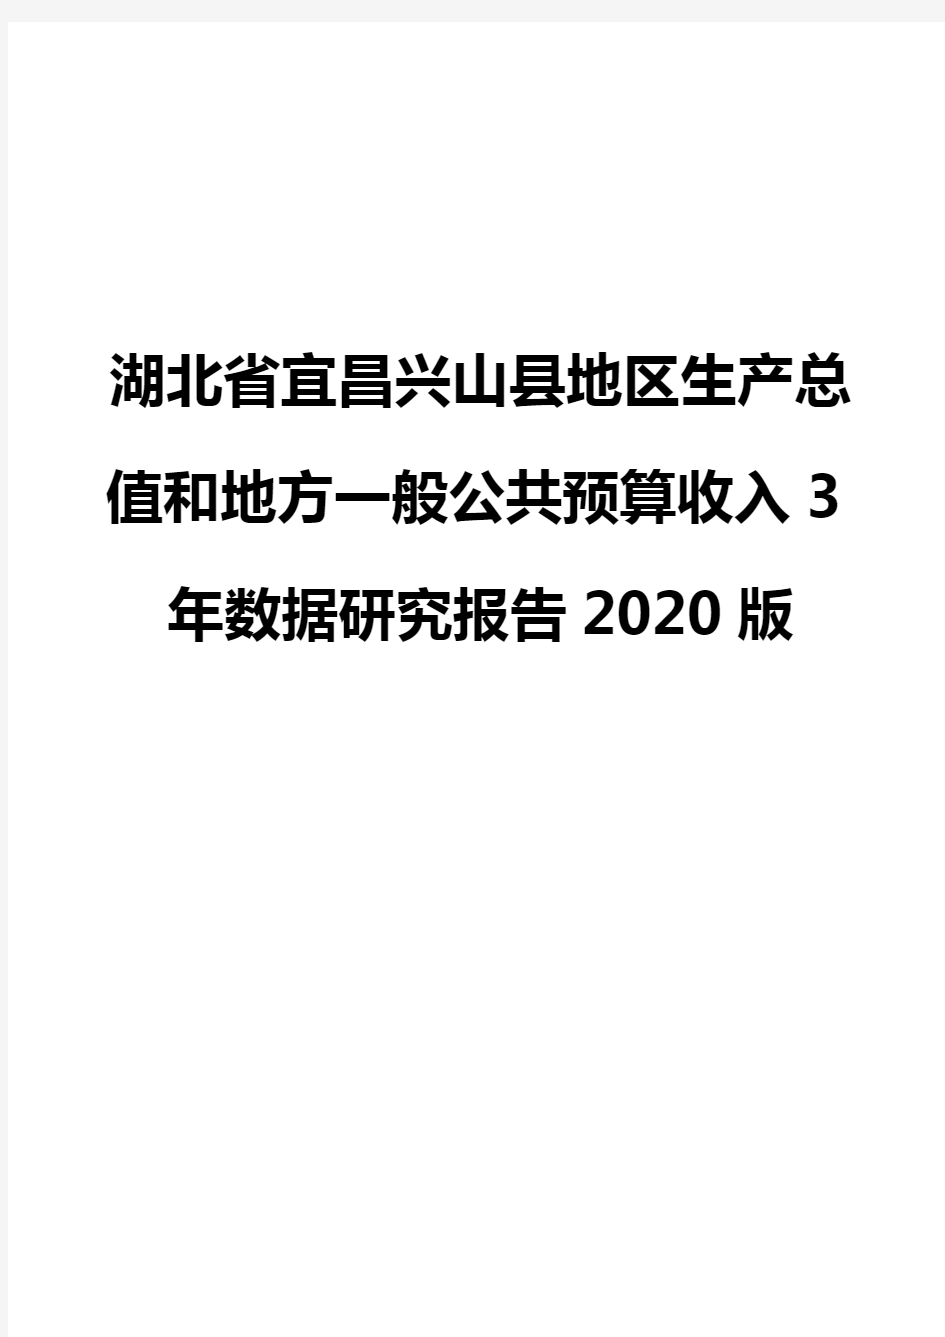 湖北省宜昌兴山县地区生产总值和地方一般公共预算收入3年数据研究报告2020版